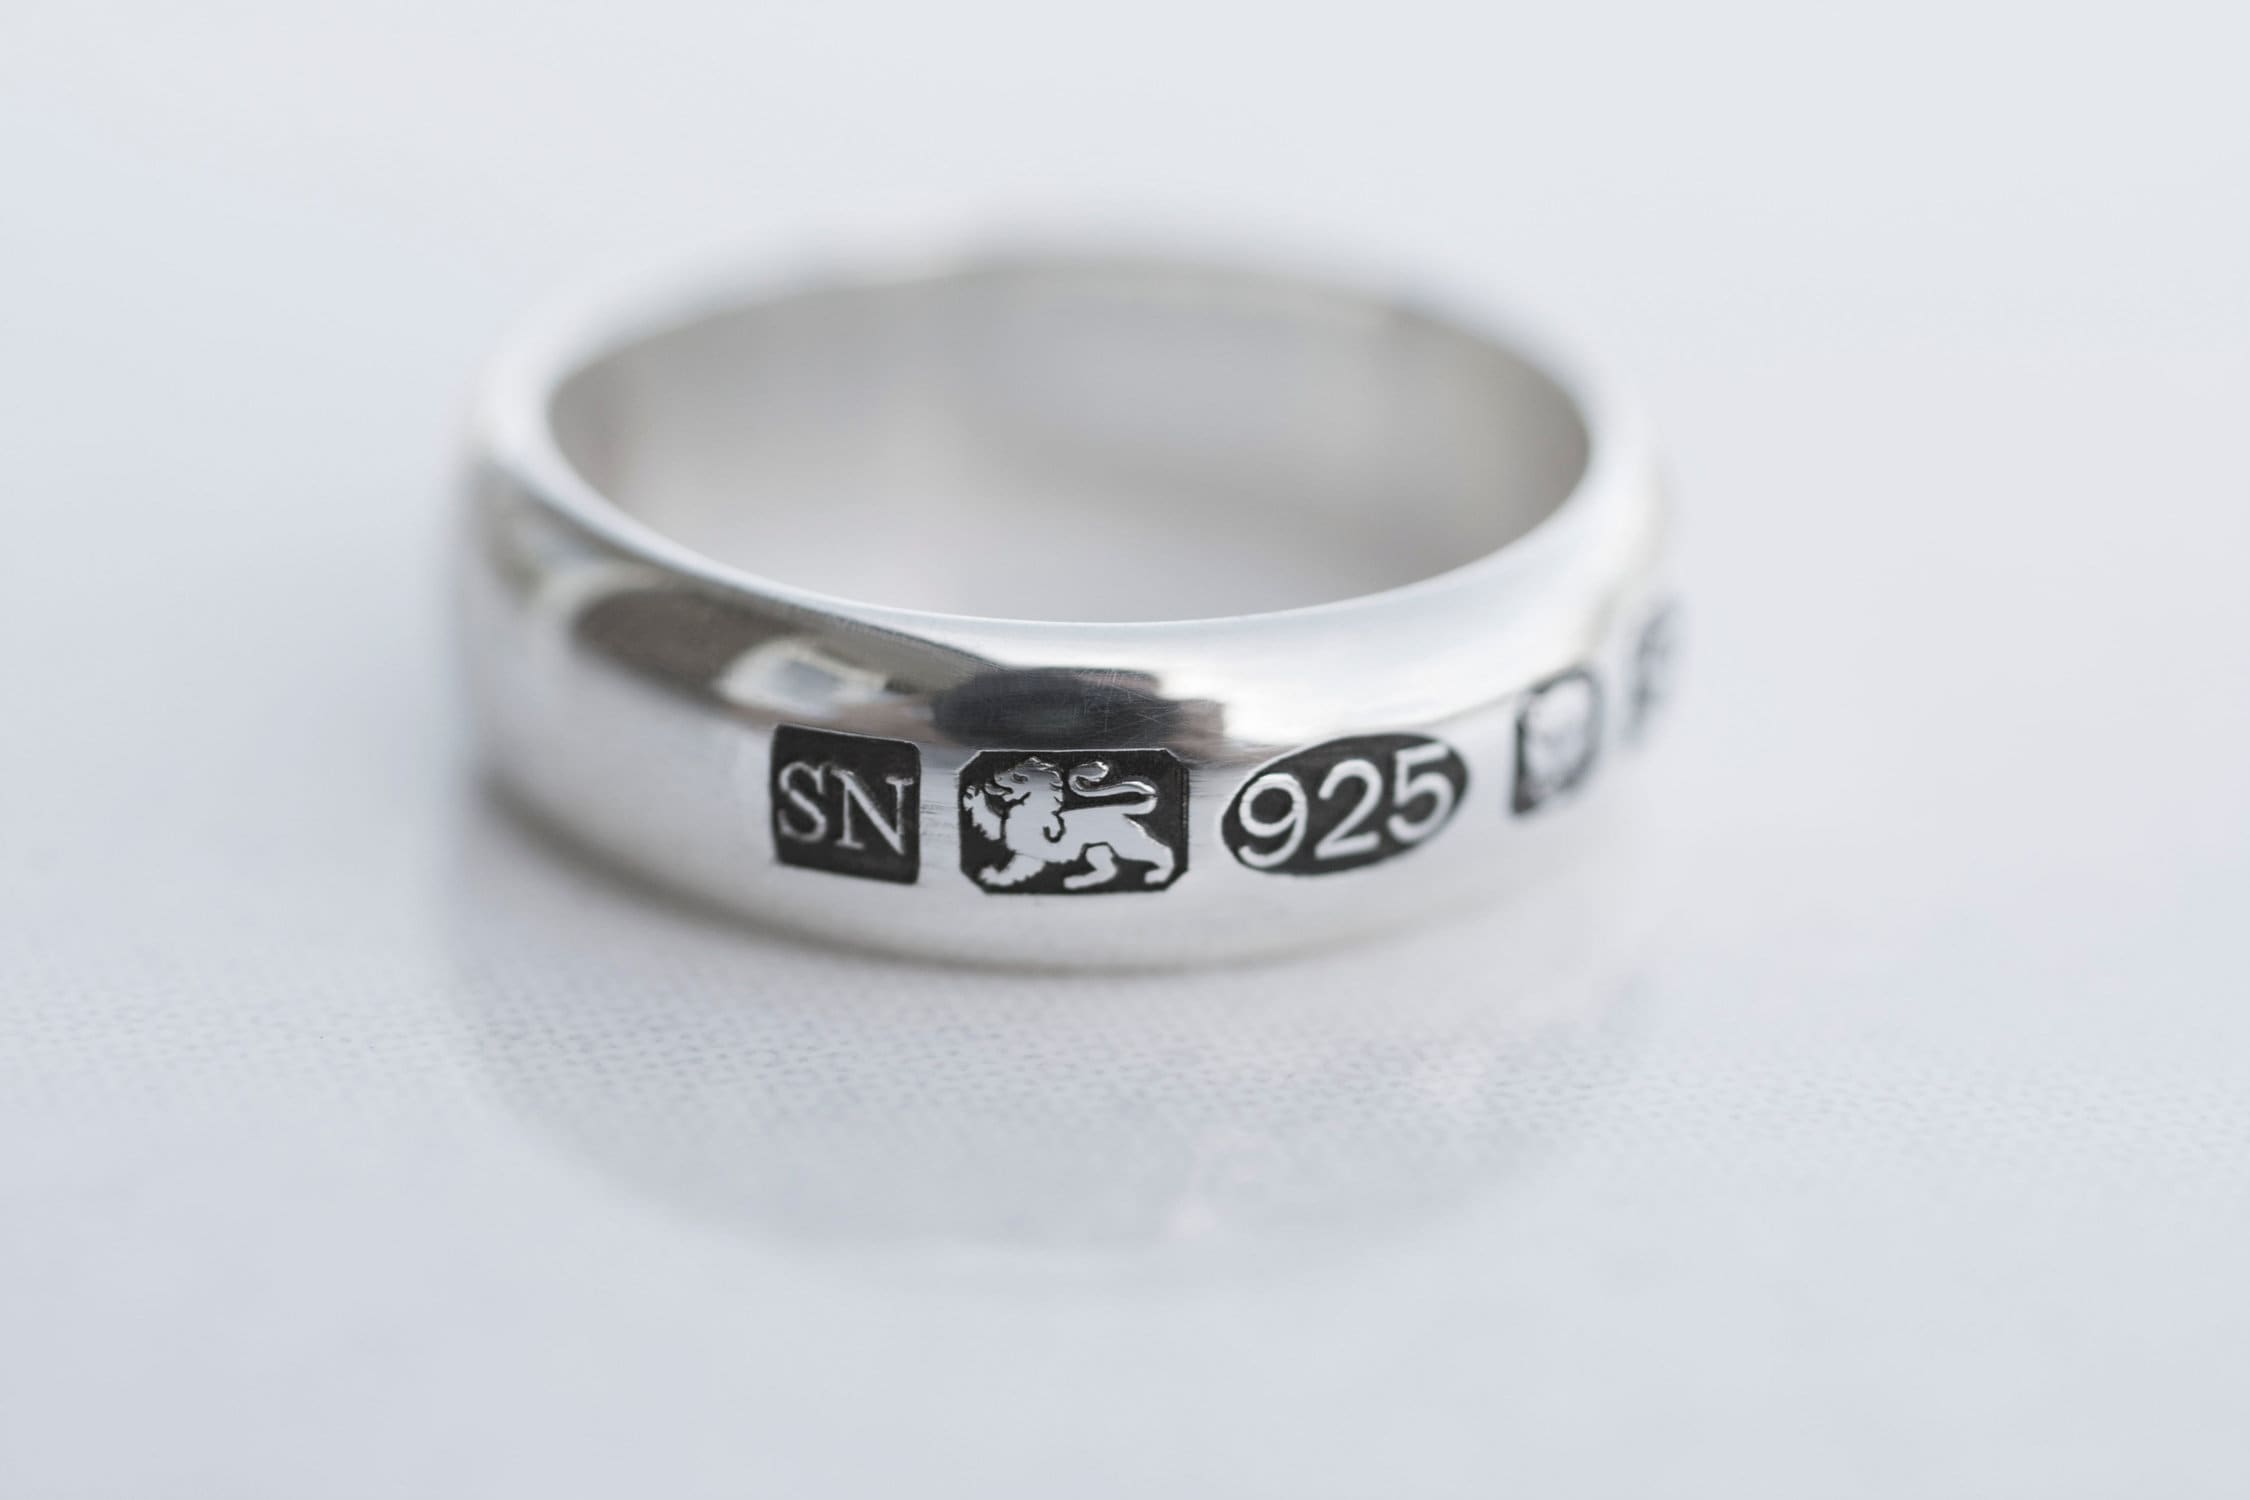 925 проба серебра хорошая или плохая. Клеймо кольца серебро ХДС 925. Клеймо серебра 925 пробы кольцо. Кольцо проба 925fs. Клеймо-925fs.